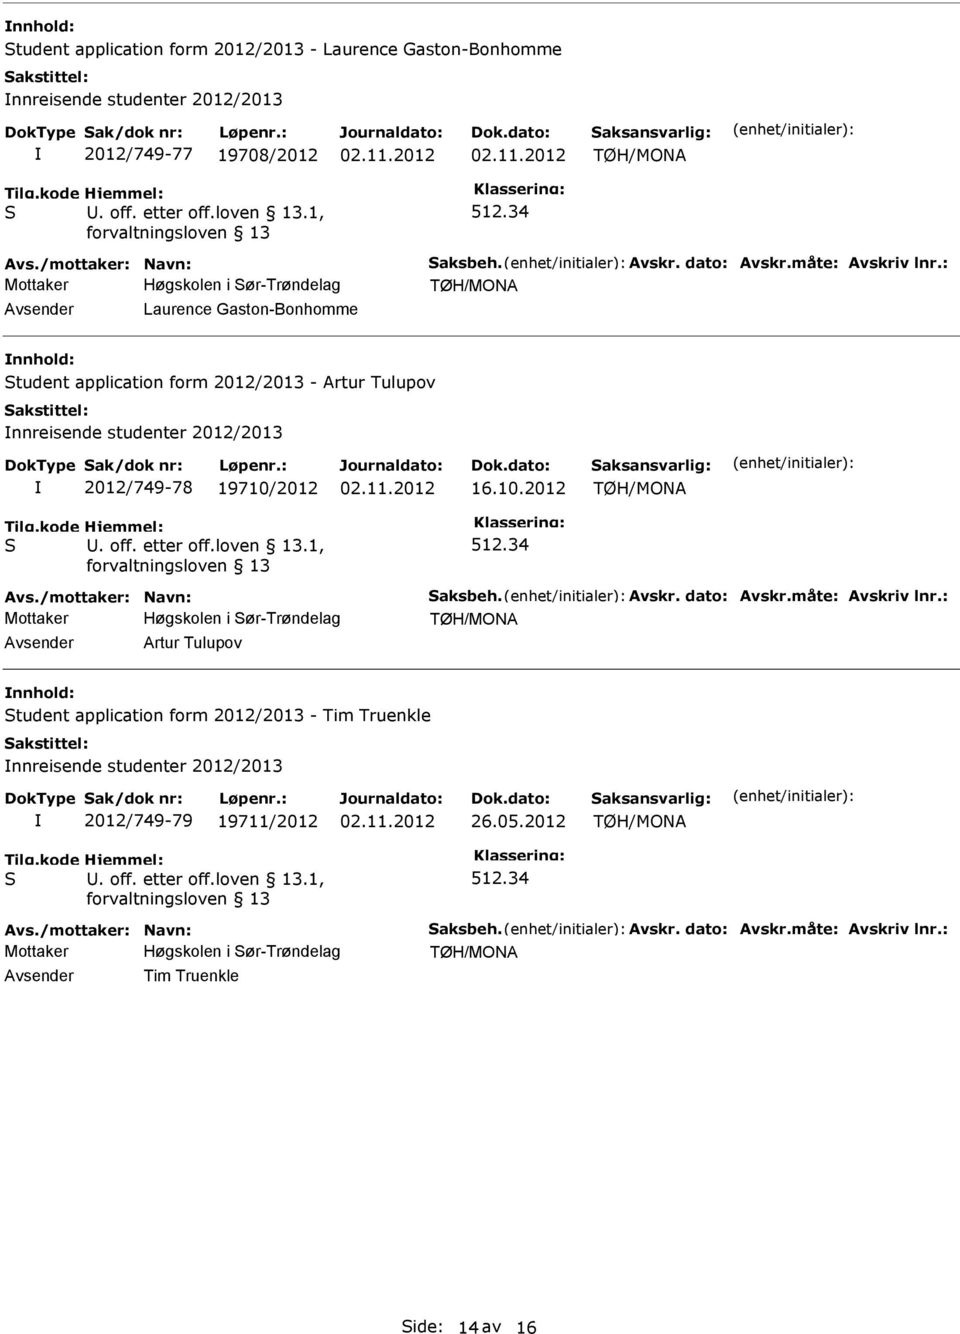 34 Mottaker Laurence Gaston-Bonhomme tudent application form 2012/2013 - Artur Tulupov nnreisende studenter 2012/2013 2012/749-78